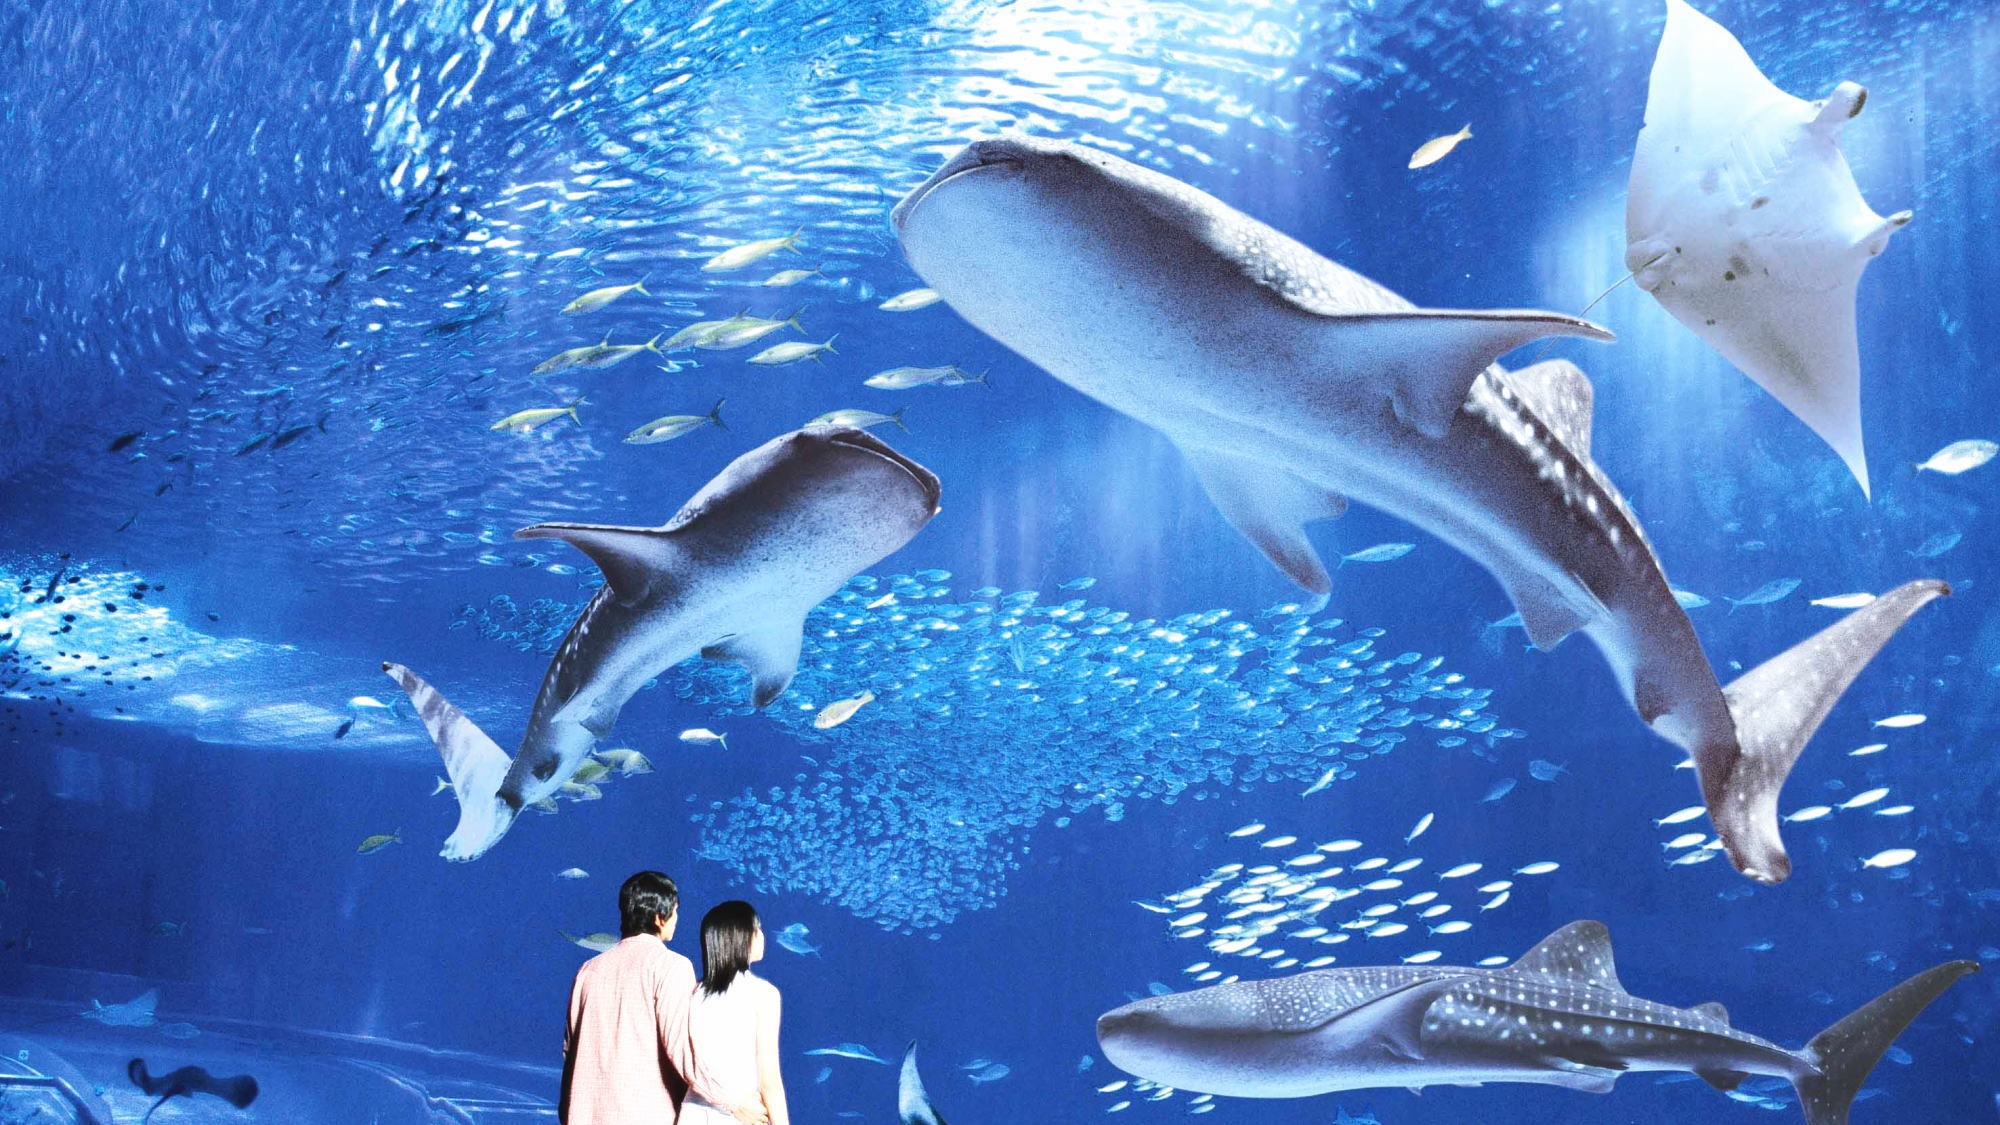 【沖縄美ら海水族館チケット】ジンベイザメやマンタに会いに行こう♪選べる(洋食or和食)ブッフェ朝食付